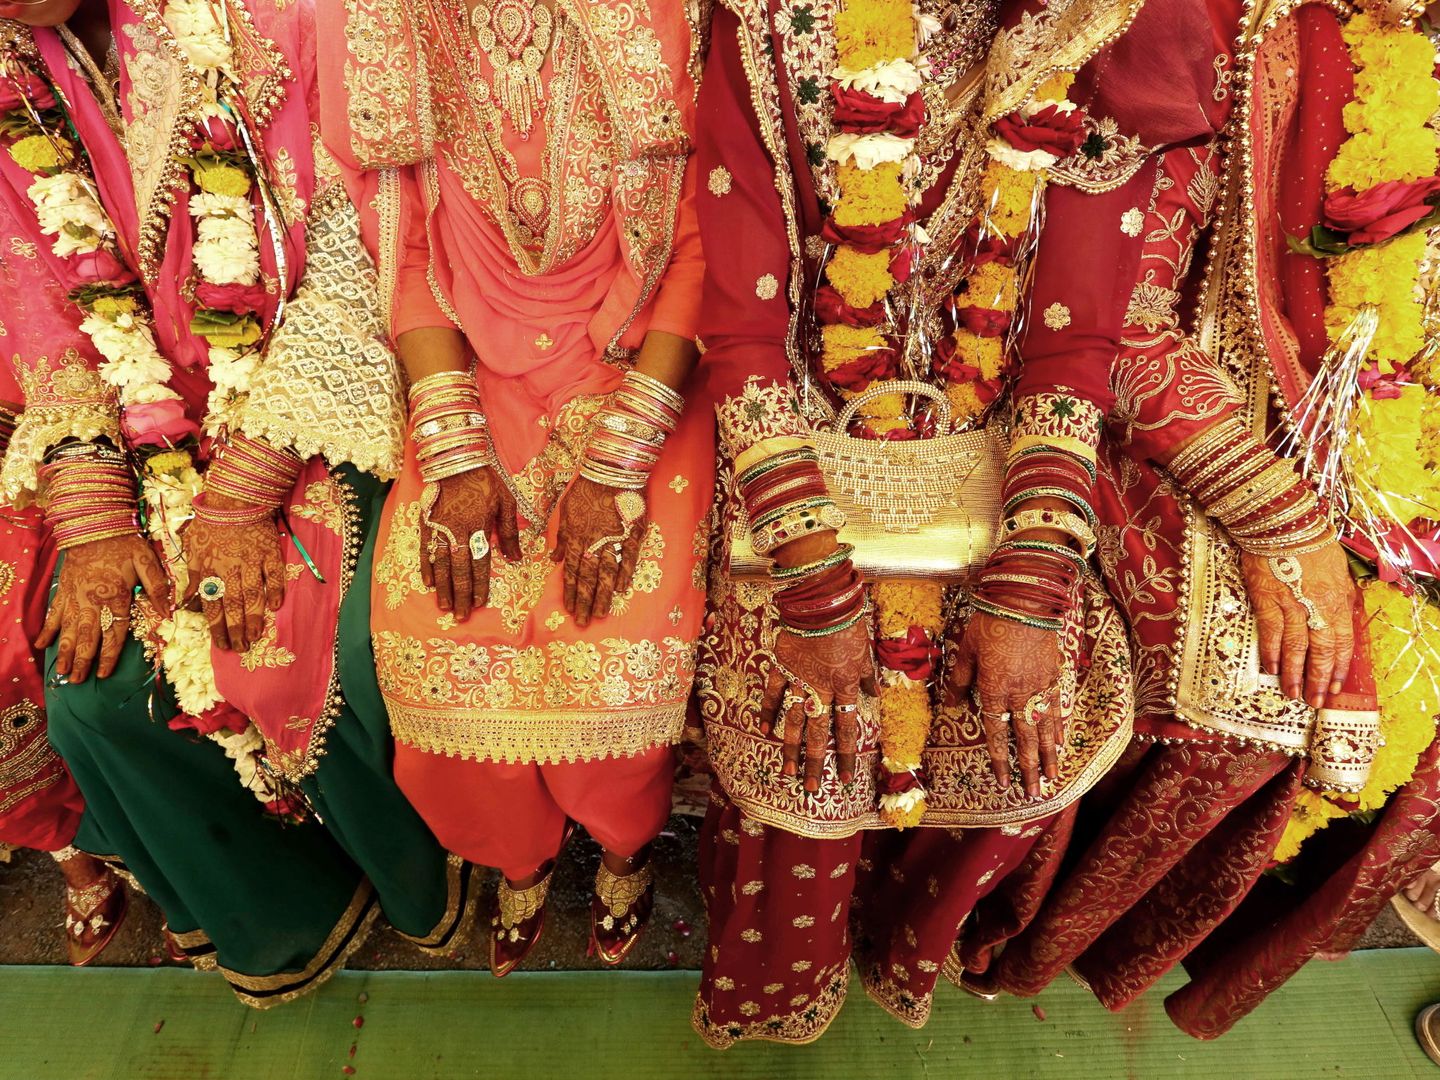 Novias en la India con los ornamentos clásicos. (Reuters)